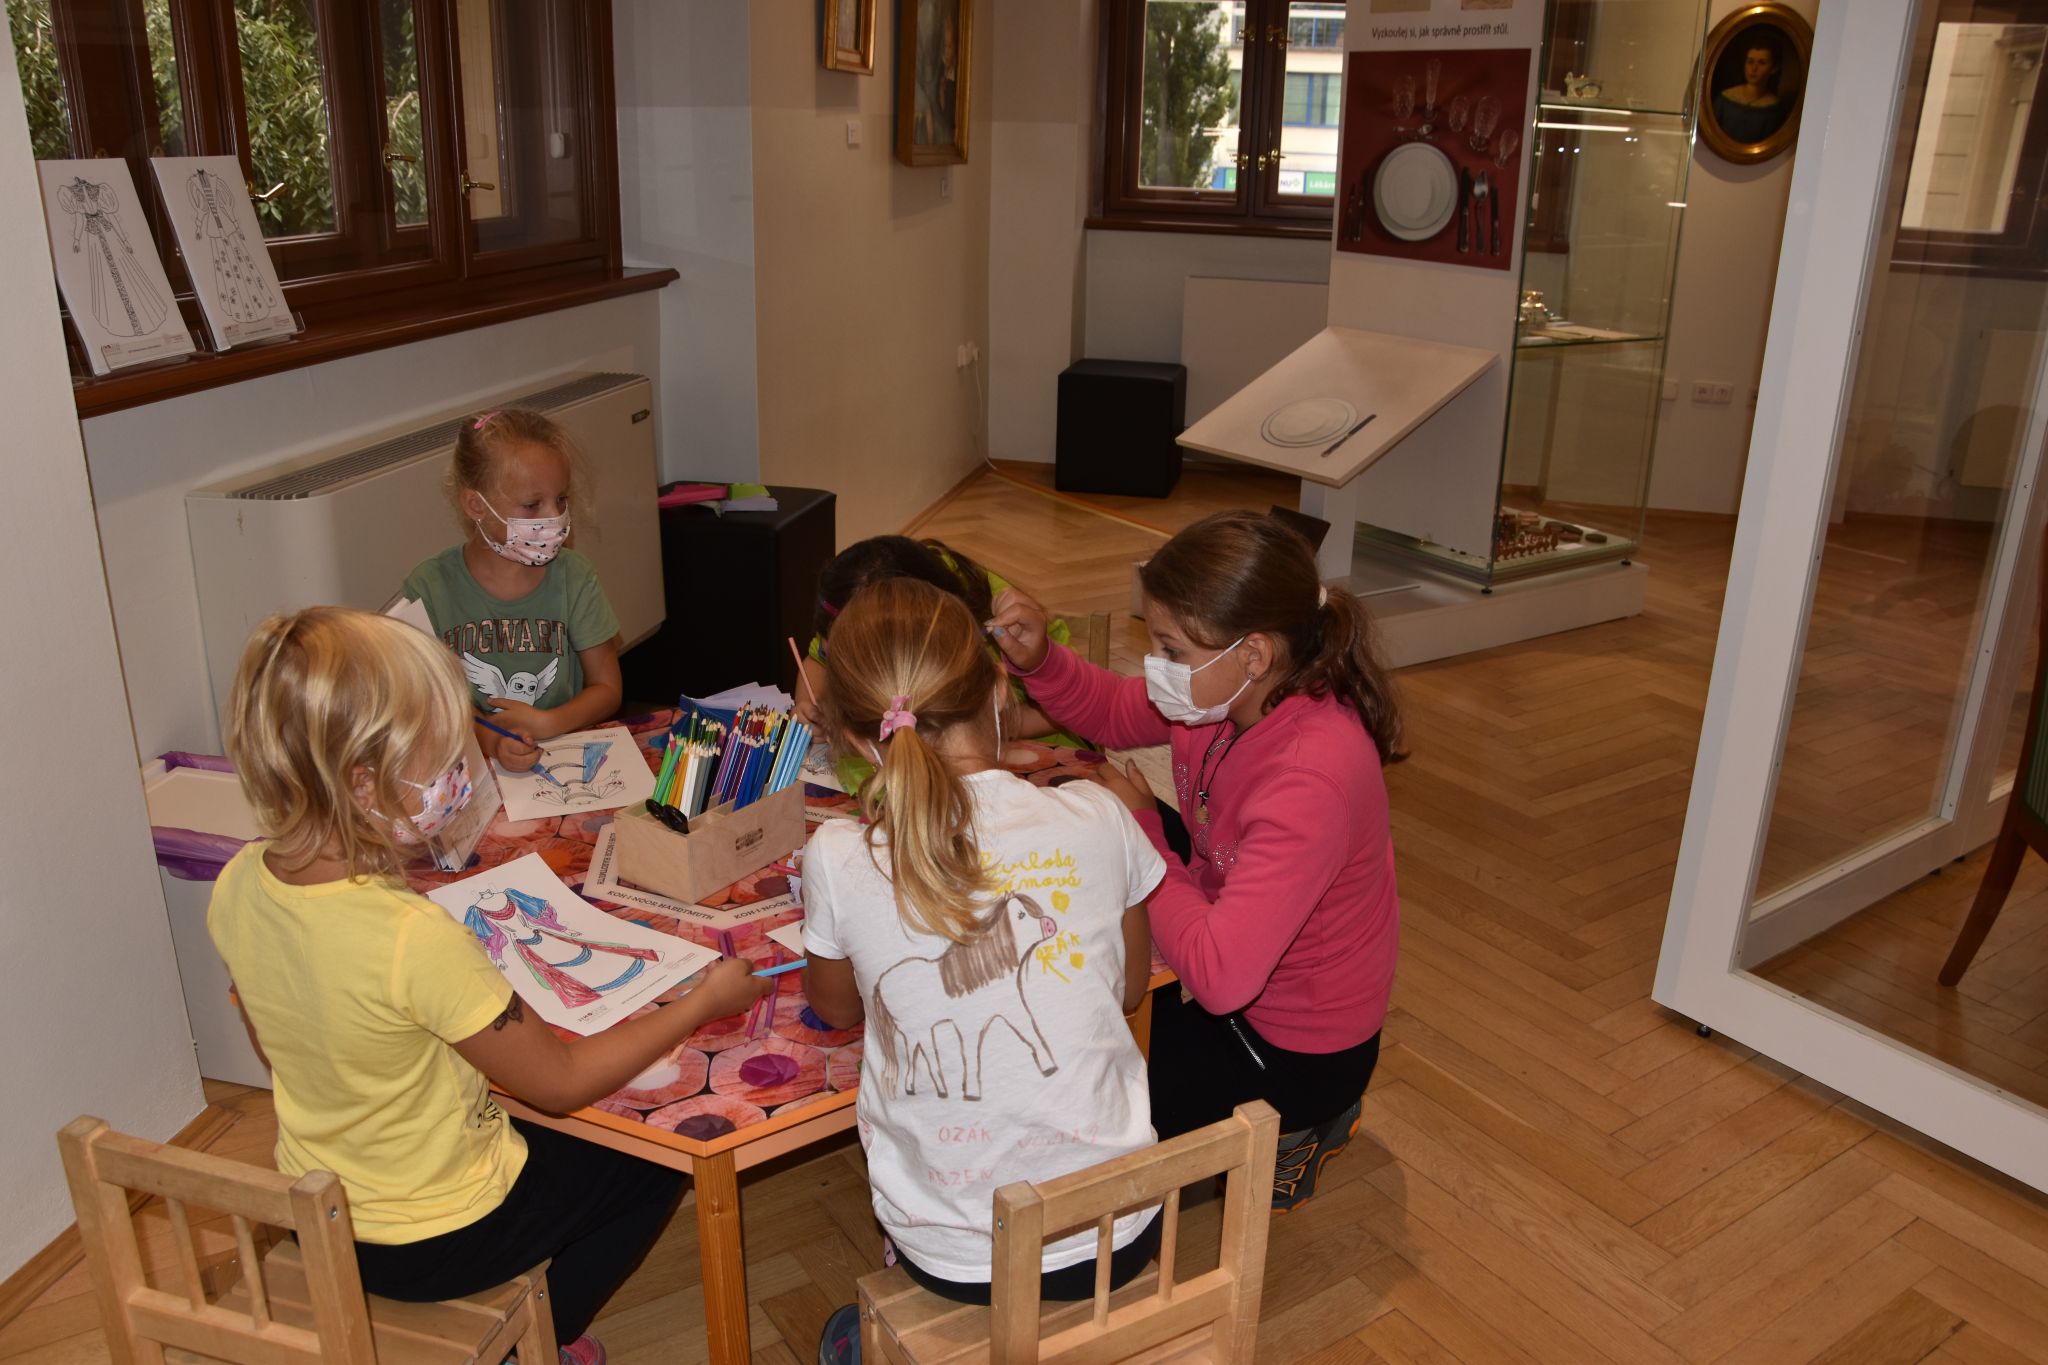 Dívky si u stolku hrají s vybarvenou vystřihovánkou oblékací panenky.